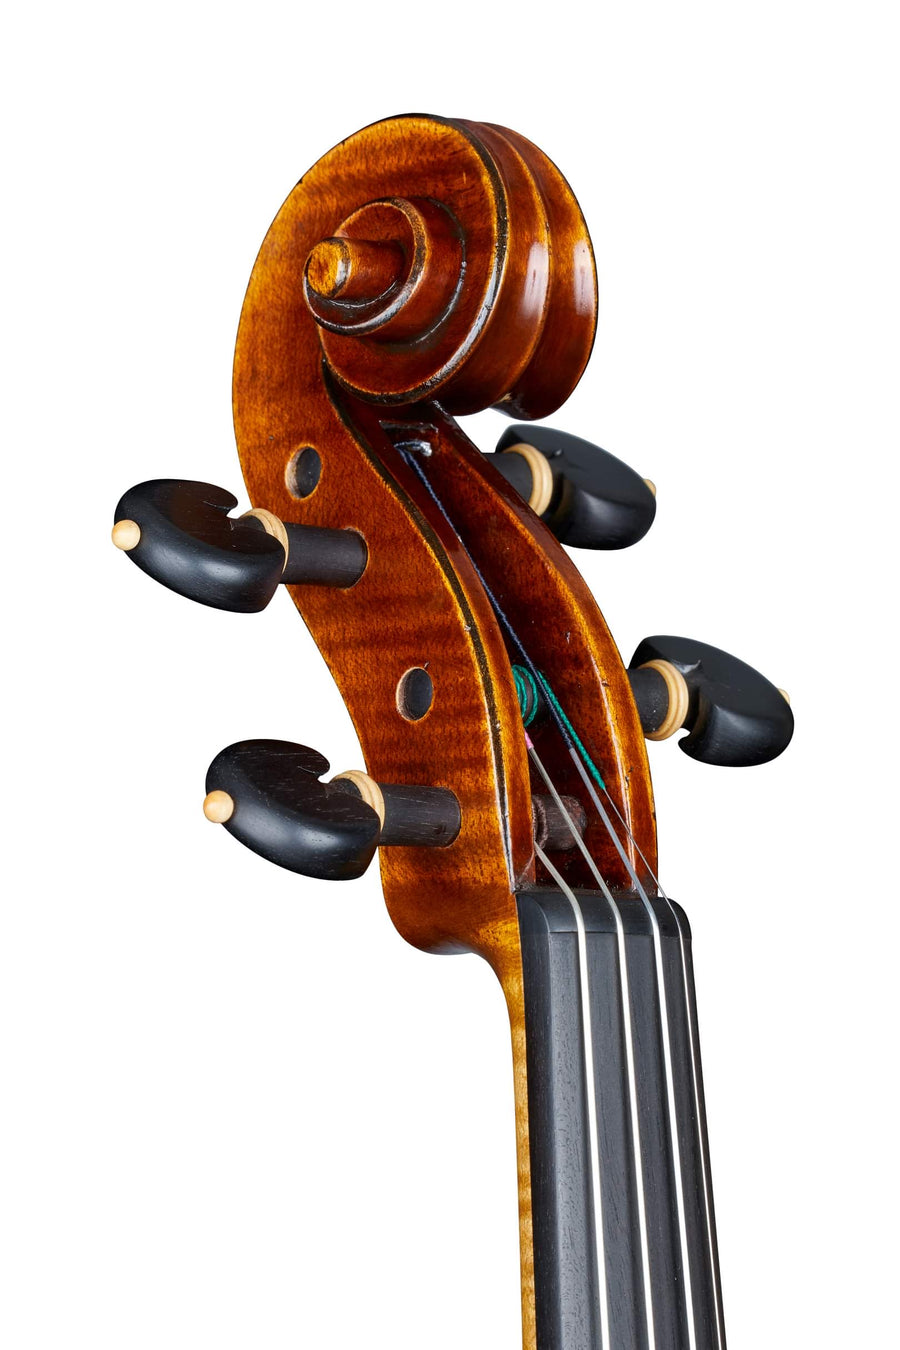 A Fine Modern Cremonese Violin by Georgi Nikolov, 2022.